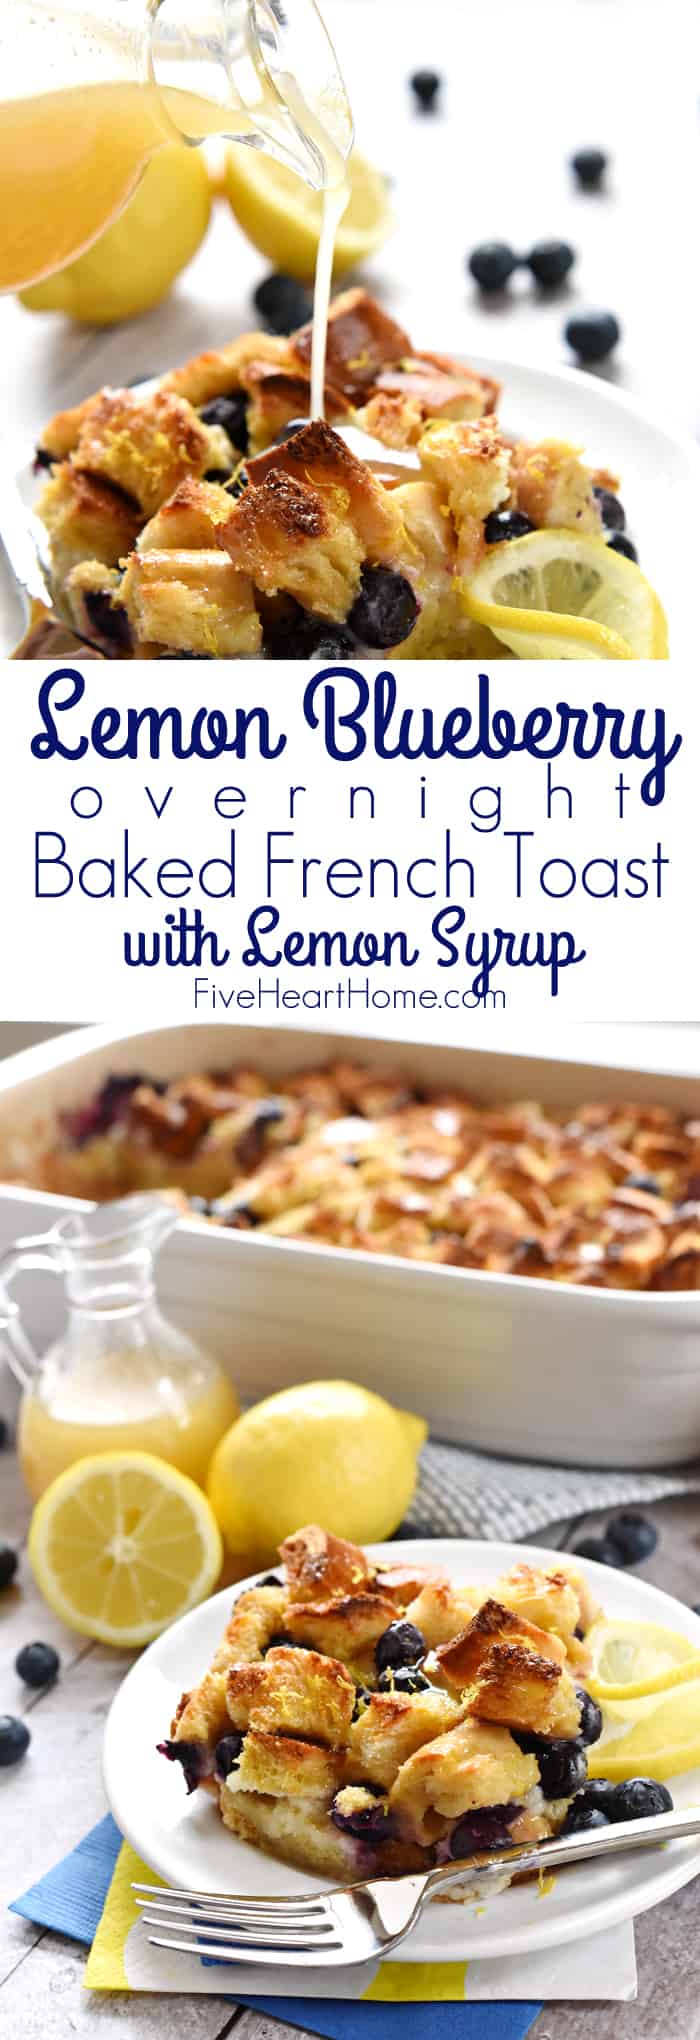 Lemon Blueberry Overnight Baked French Toast with Lemon Syrup